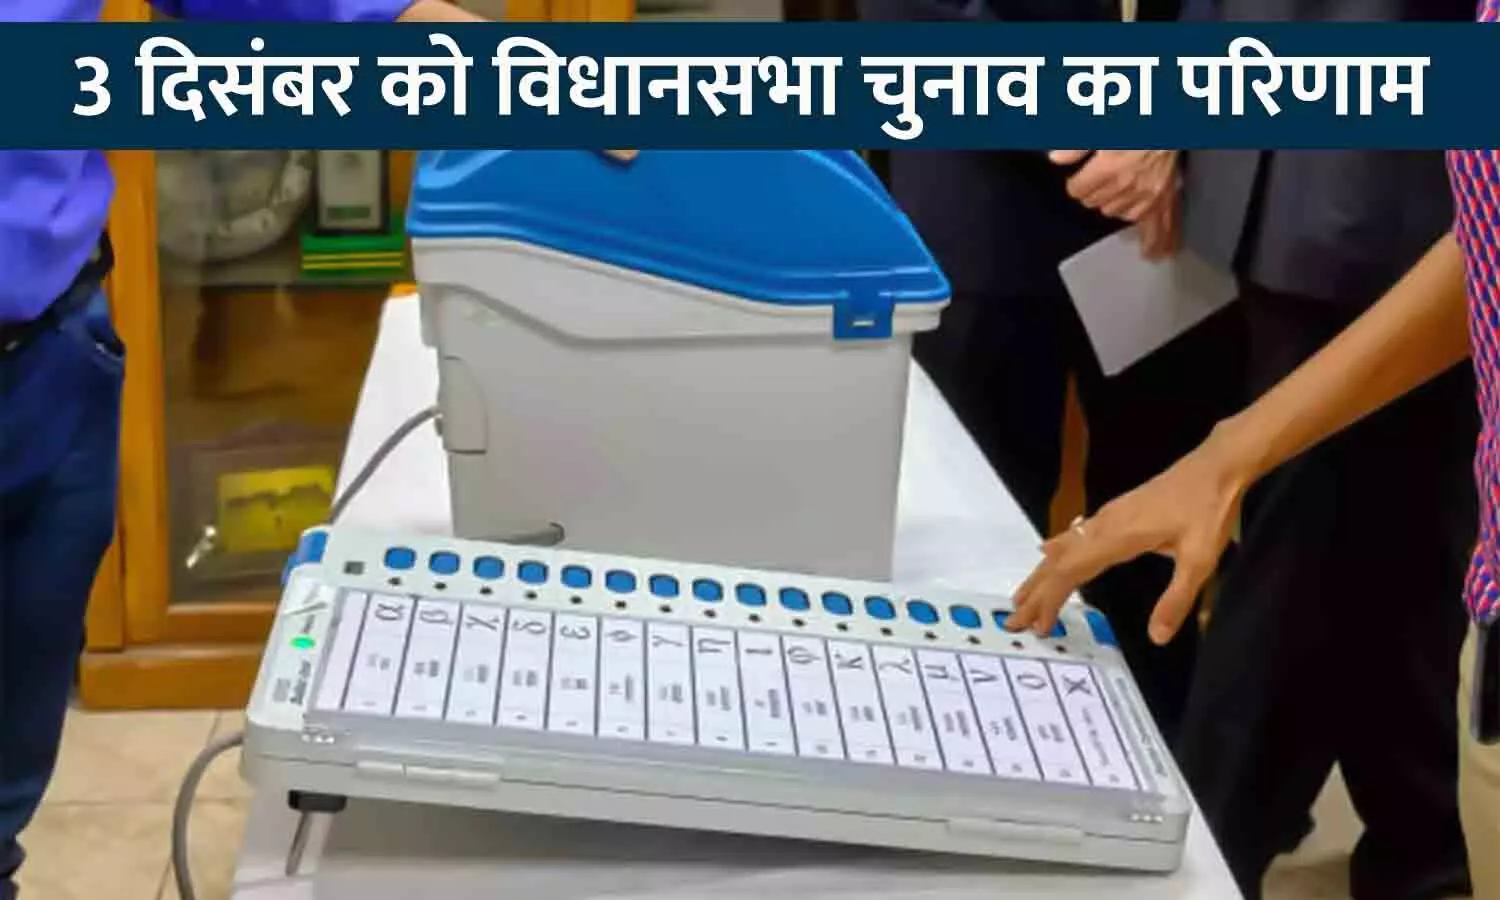 3 दिसंबर को विधानसभा चुनाव का परिणाम: रीवा के इंजीनियरिंग कॉलेज में होगी मतगणना, EVM का डिस्पले पैनल देख सकेंगे